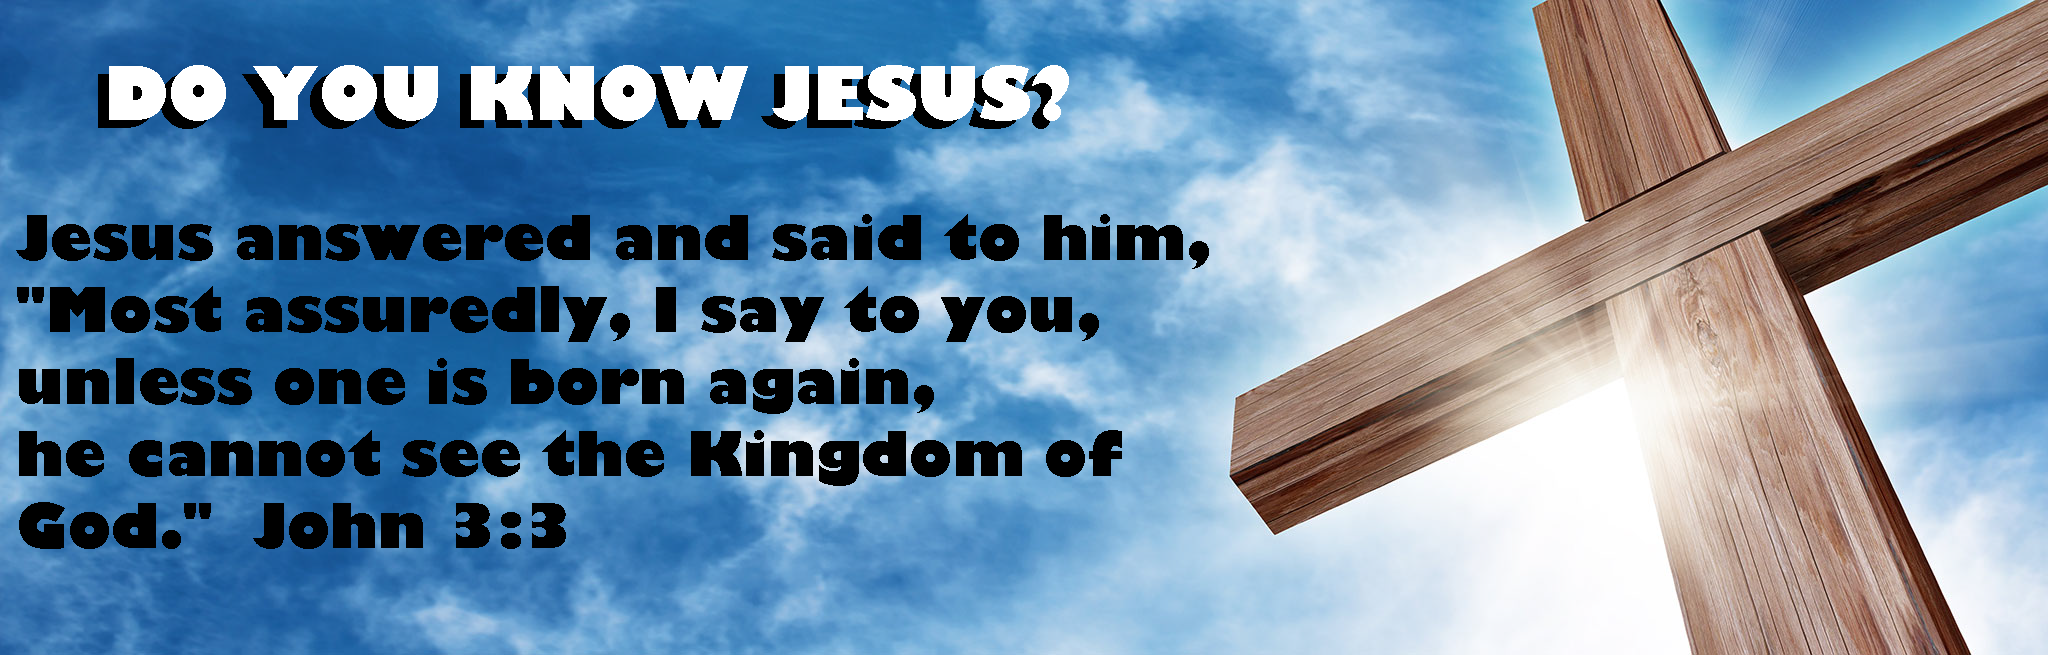 do you know jesus?